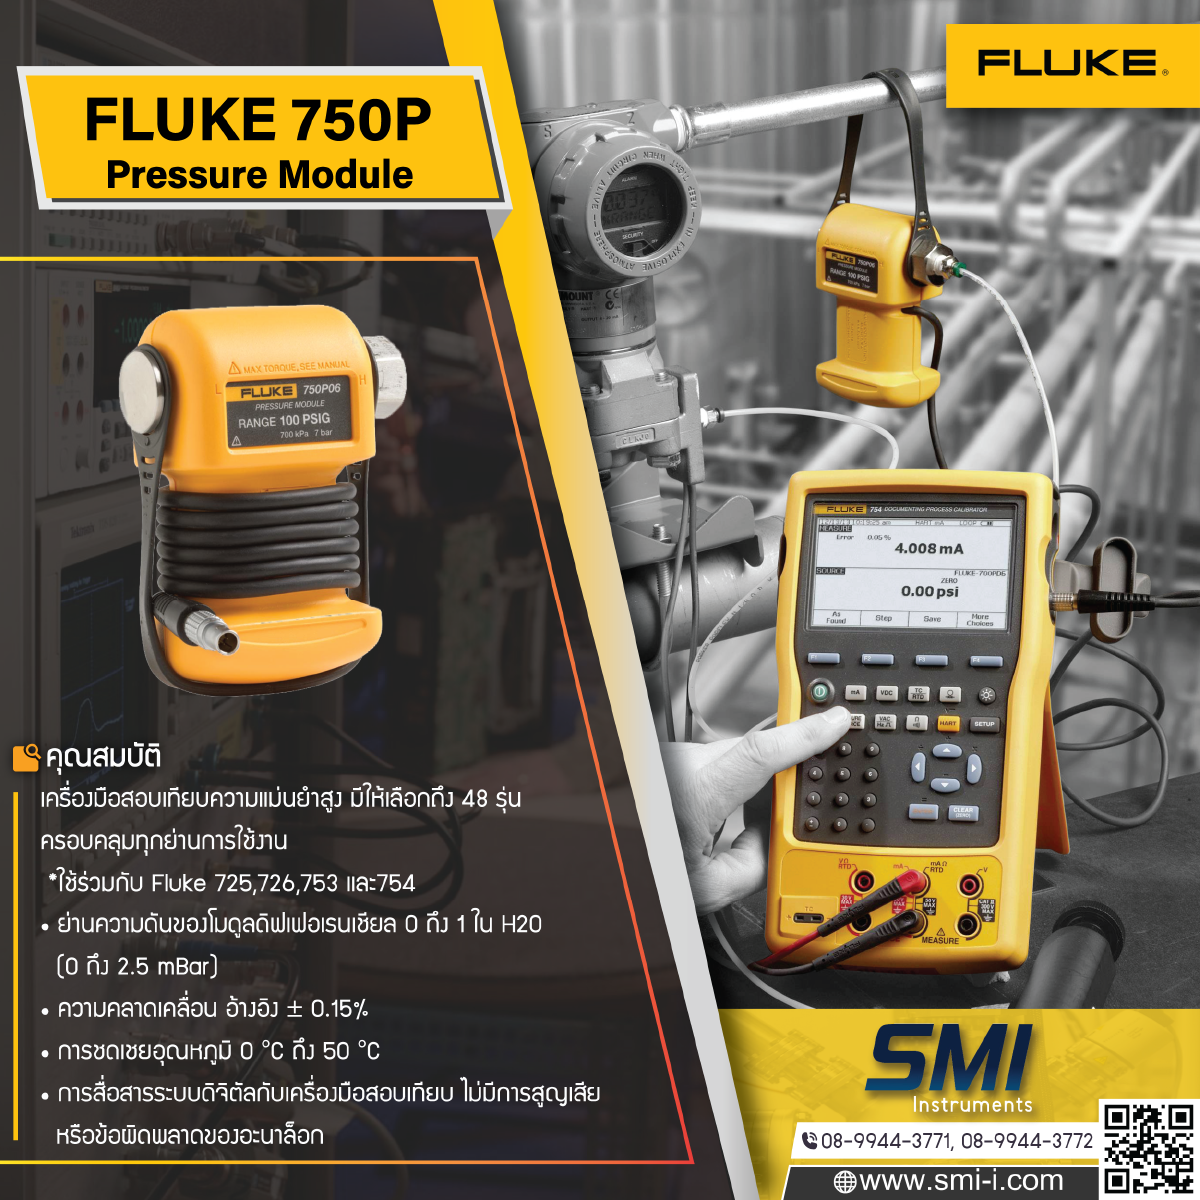 SMI info FLUKE 750P Series Pressure Modules